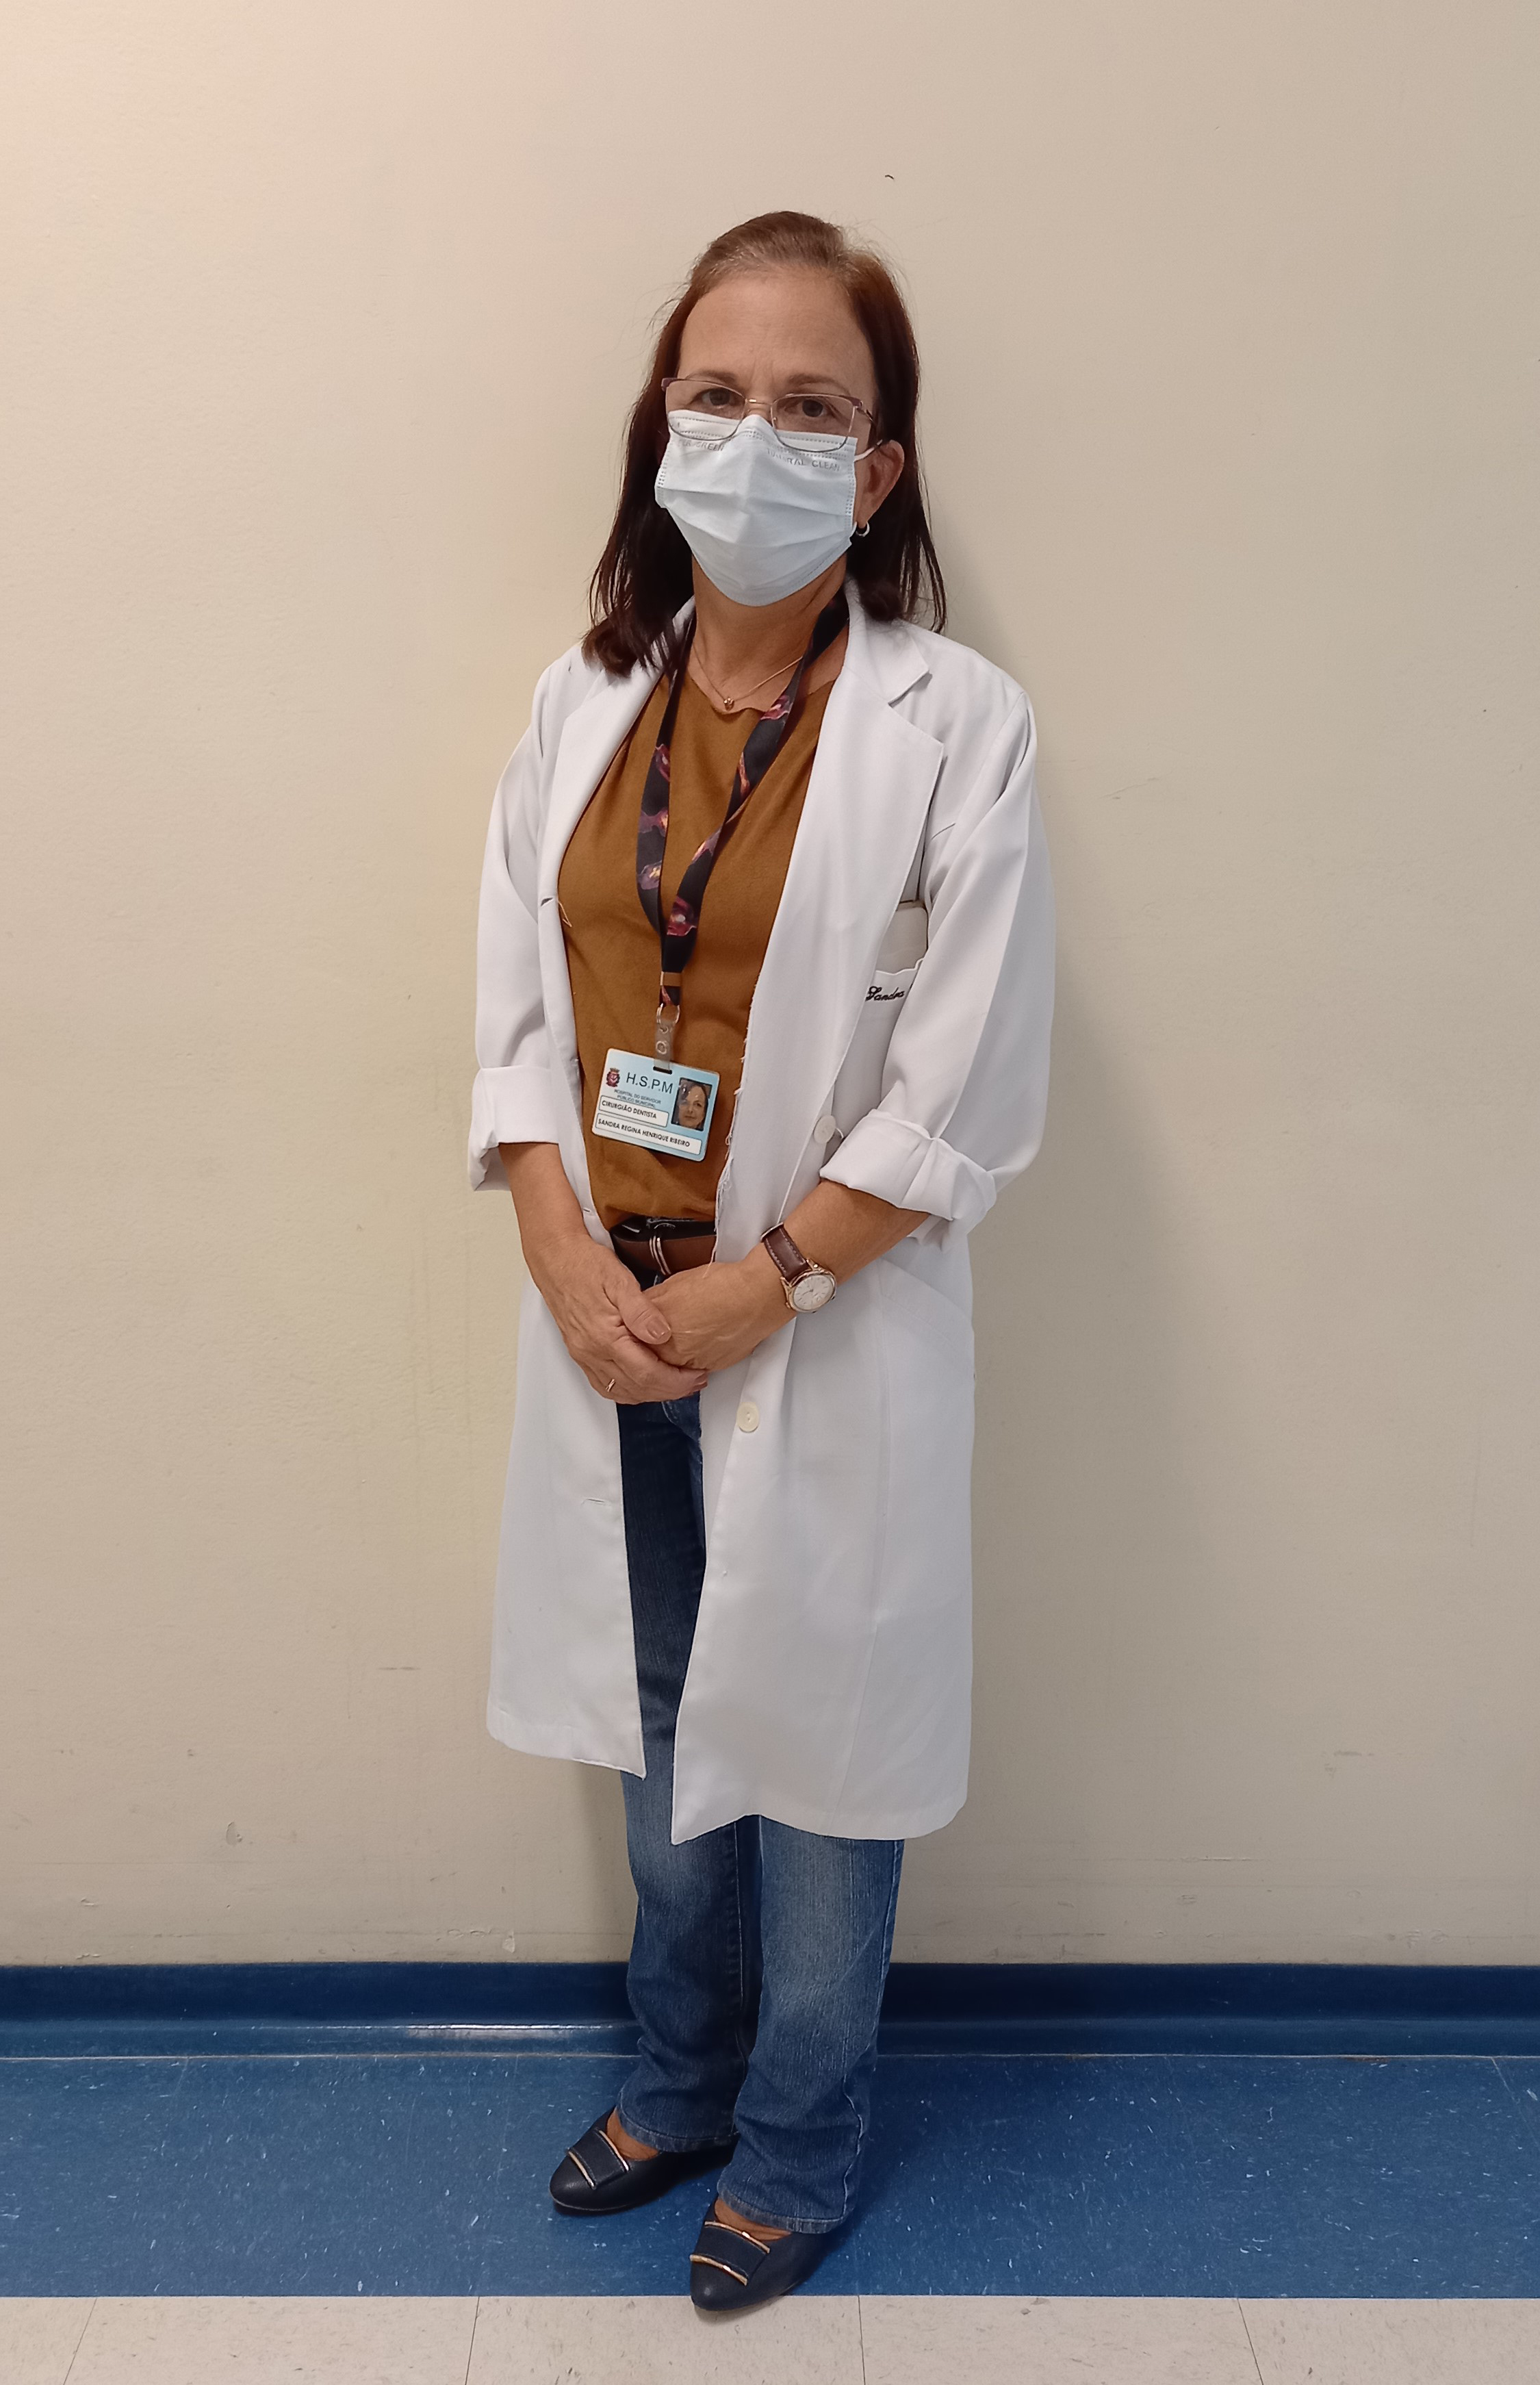 Foto da Dra. Sandra em pé em frente a uma parede bege e piso azul